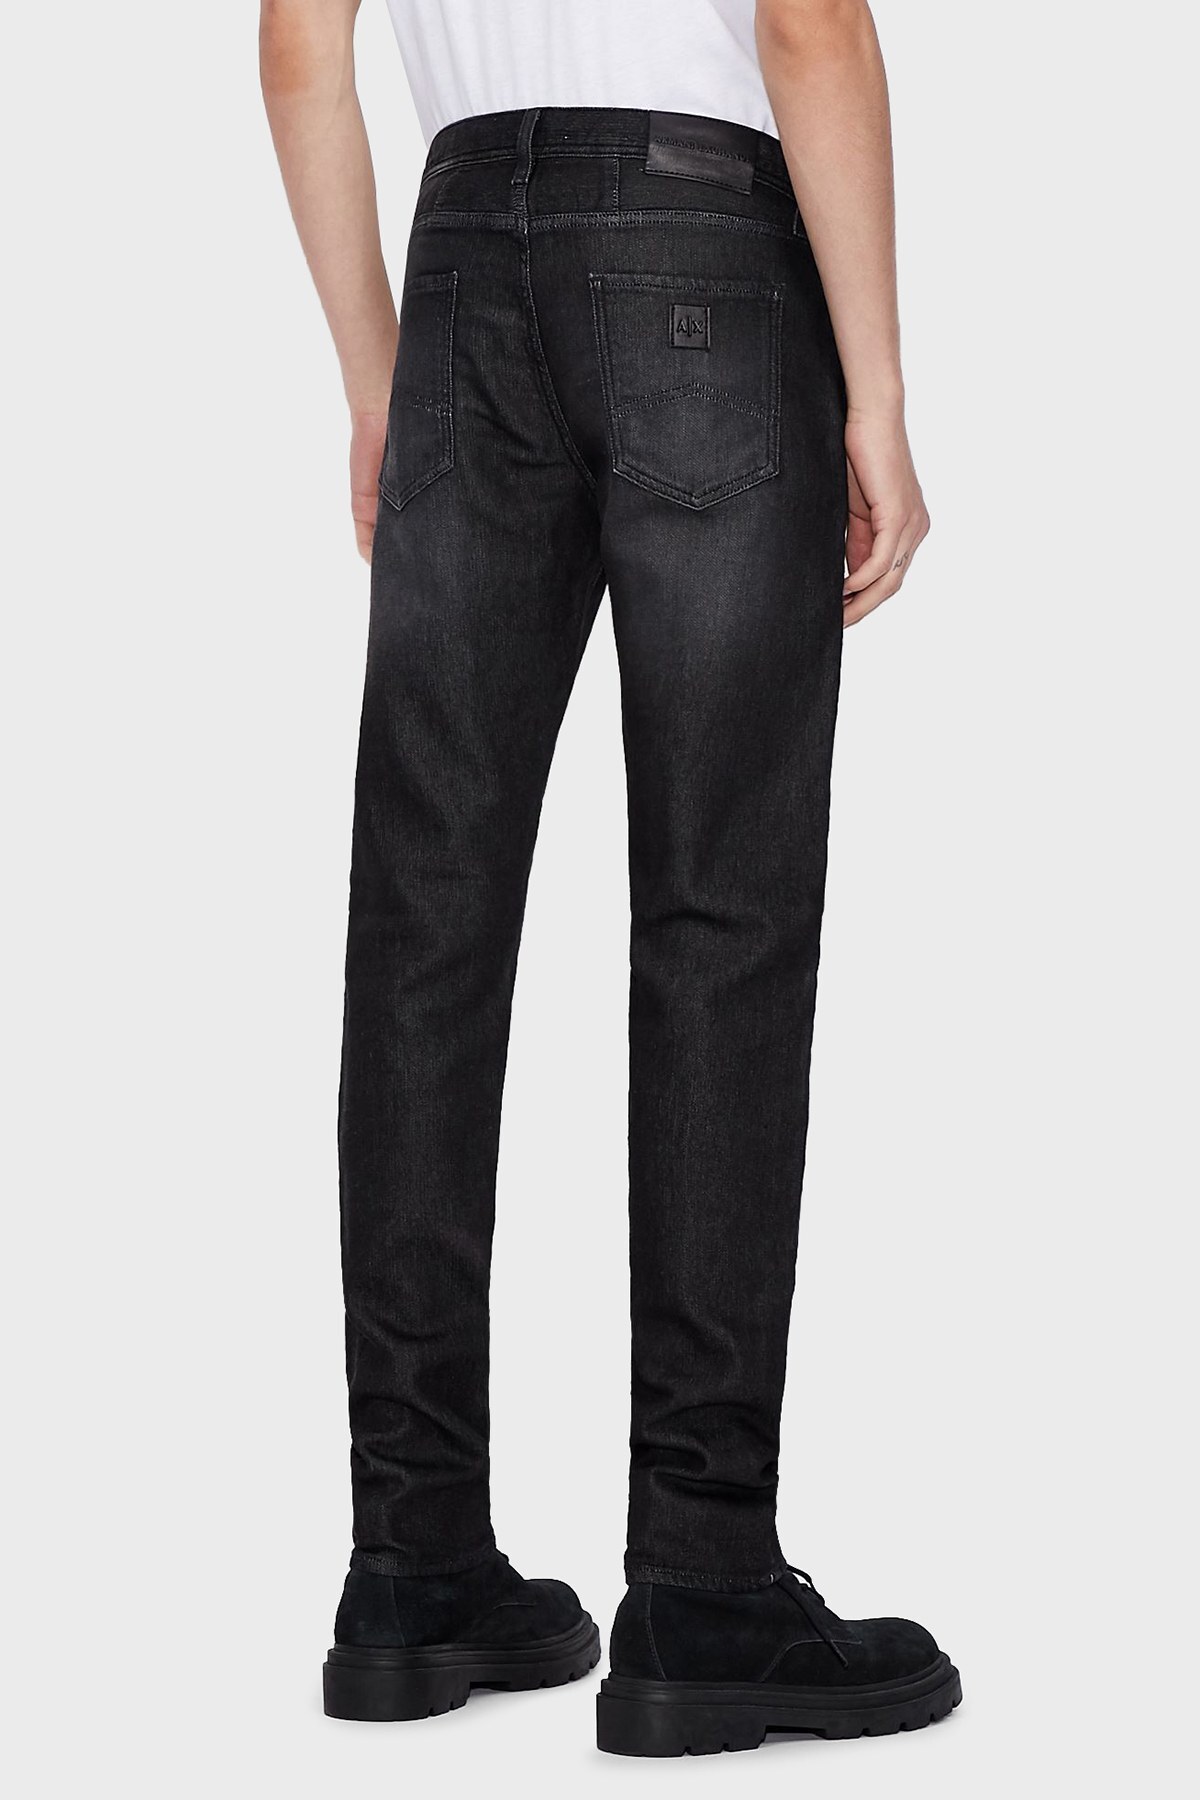 Armani Exchange Pamuklu Slim Fit J13 Jeans Erkek Kot Pantolon 6KZJ13 Z5P6Z 0204 SIYAH